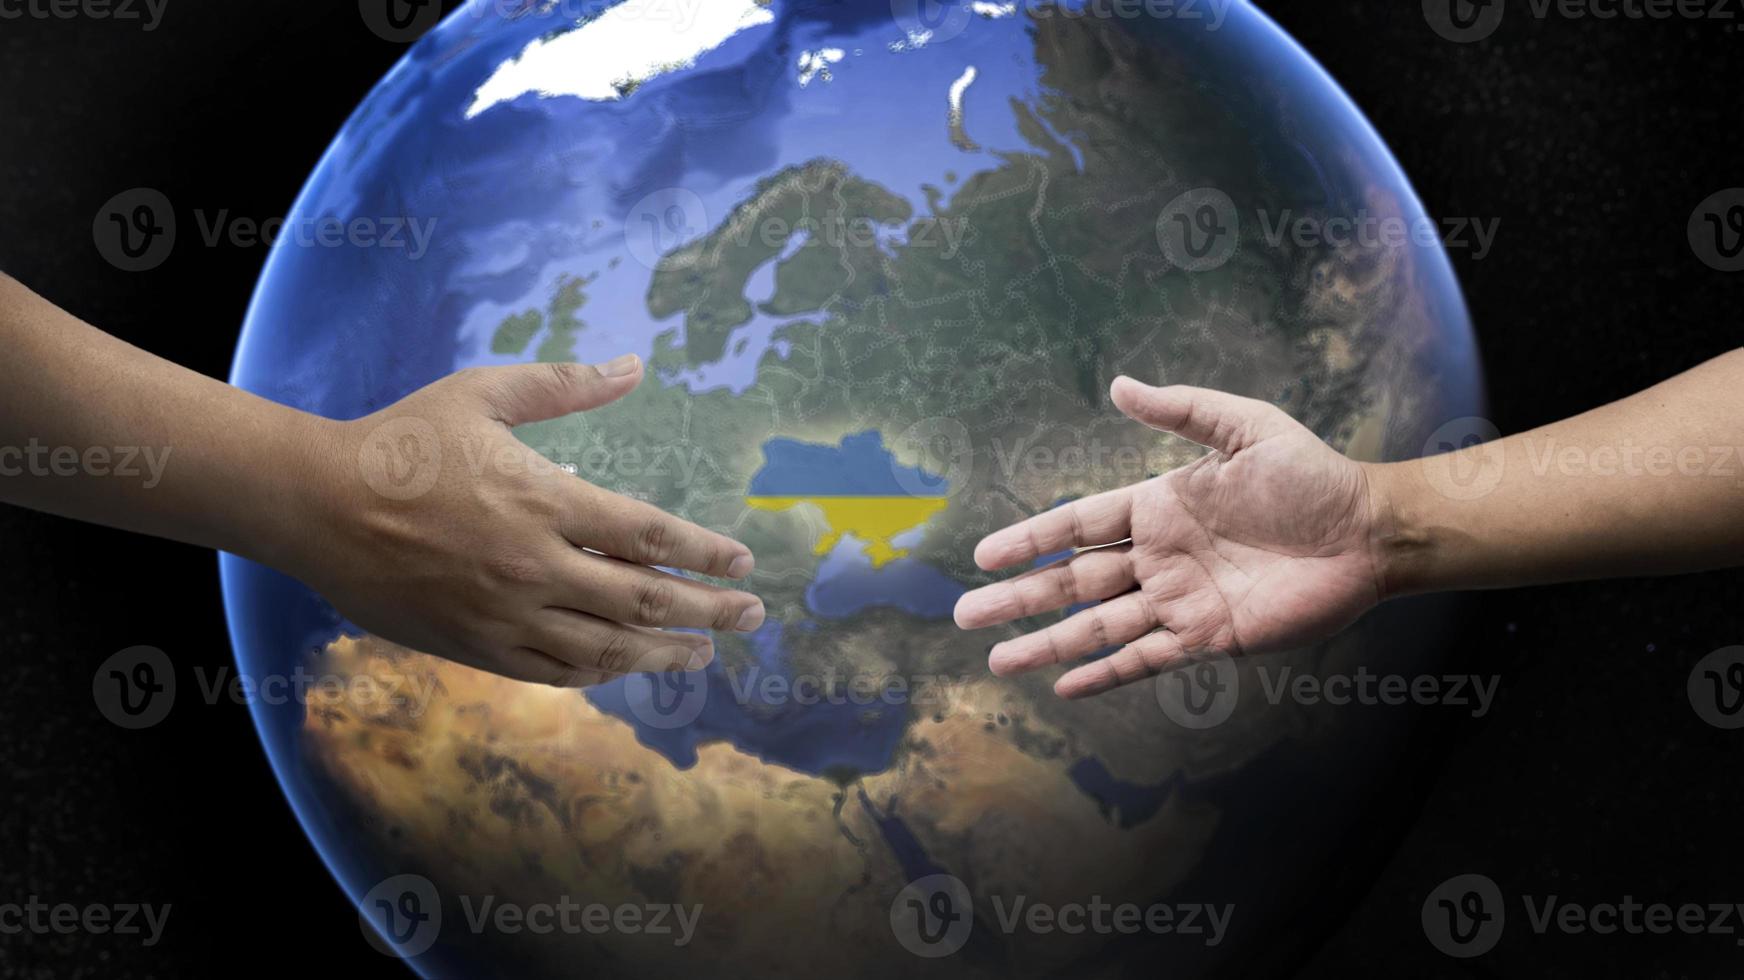 tendant la main pour unir la russie et l'ukraine pour faire la paix sur le fond de la terre. photo